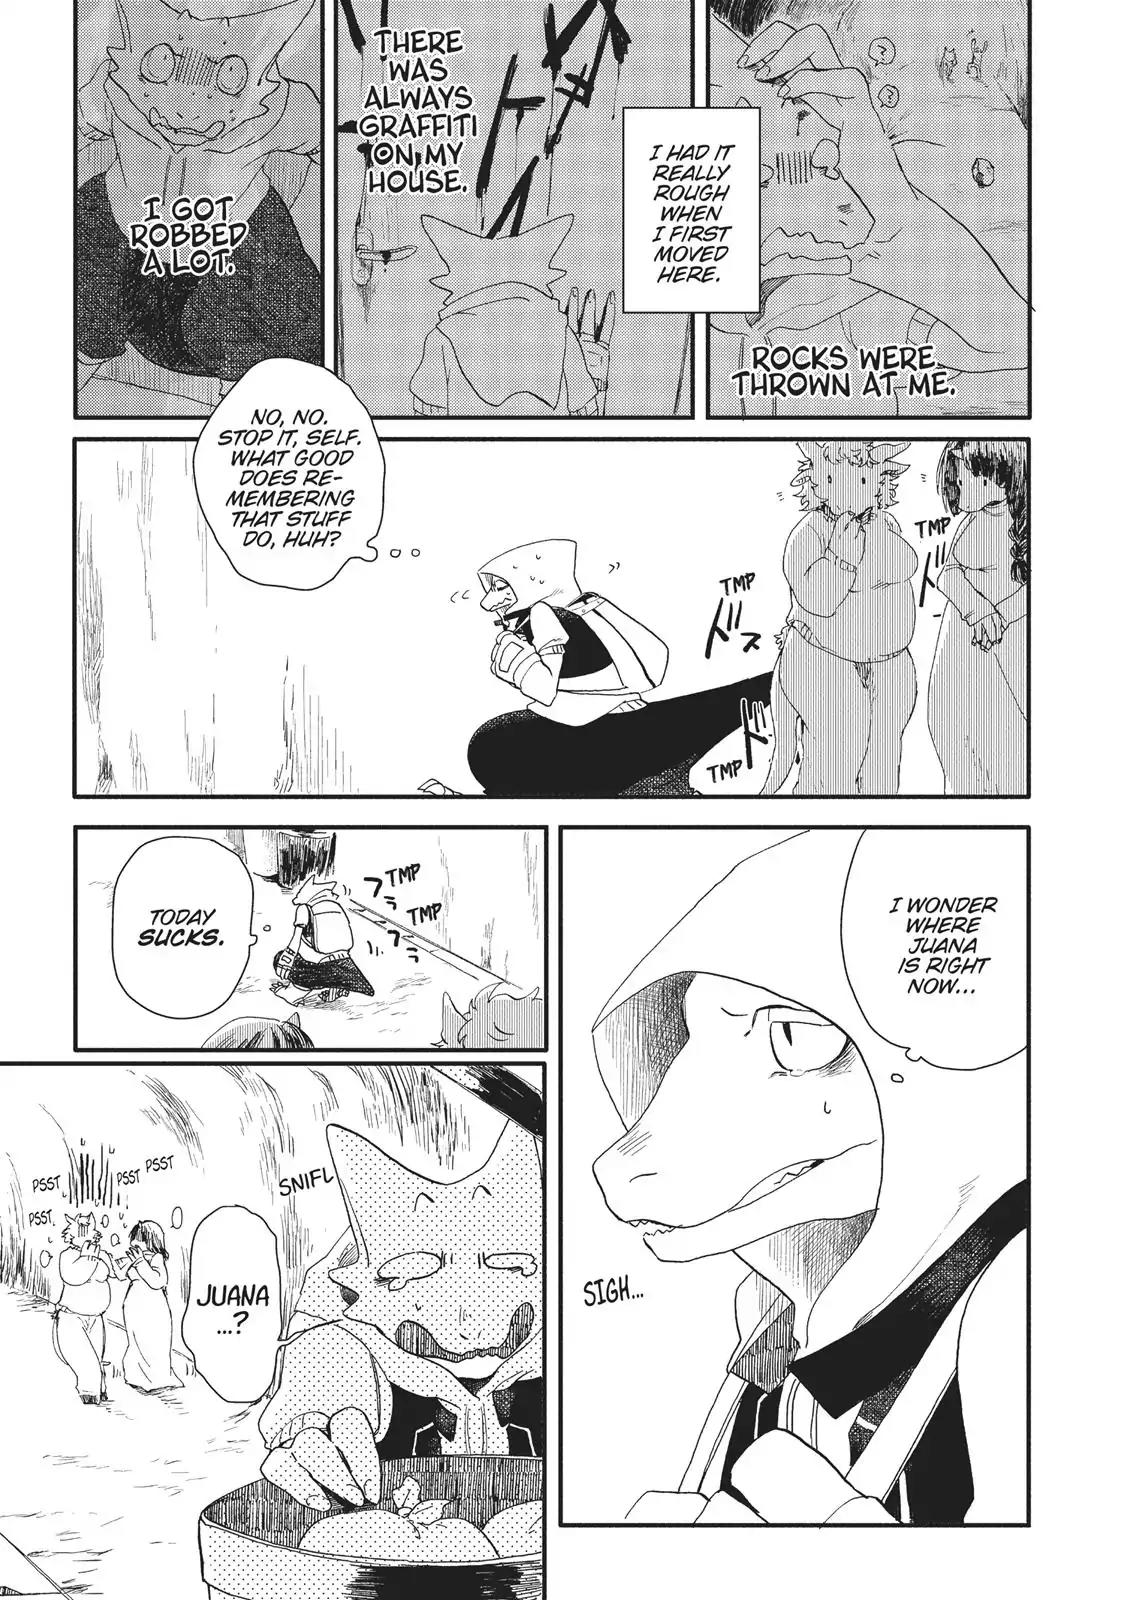 Ryuu no Nanakuni to Minashigo no Juana Vol.1 Chapter 2